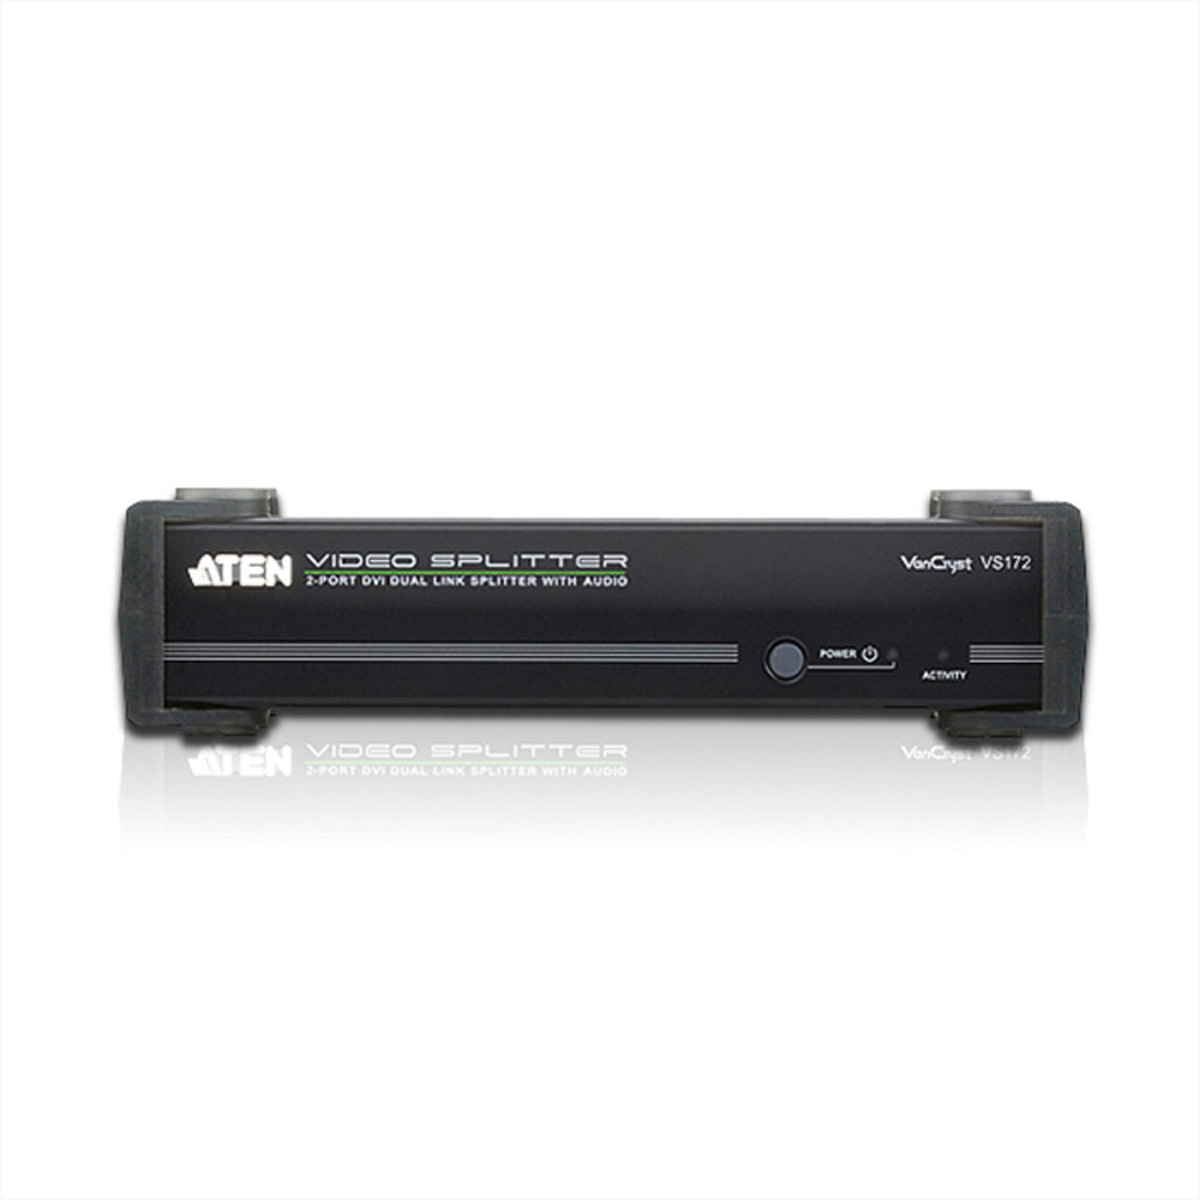 ATEN VS172 DVI Dual Link 2fach Video-/Audiosplitter, DVI-Video-Splitter